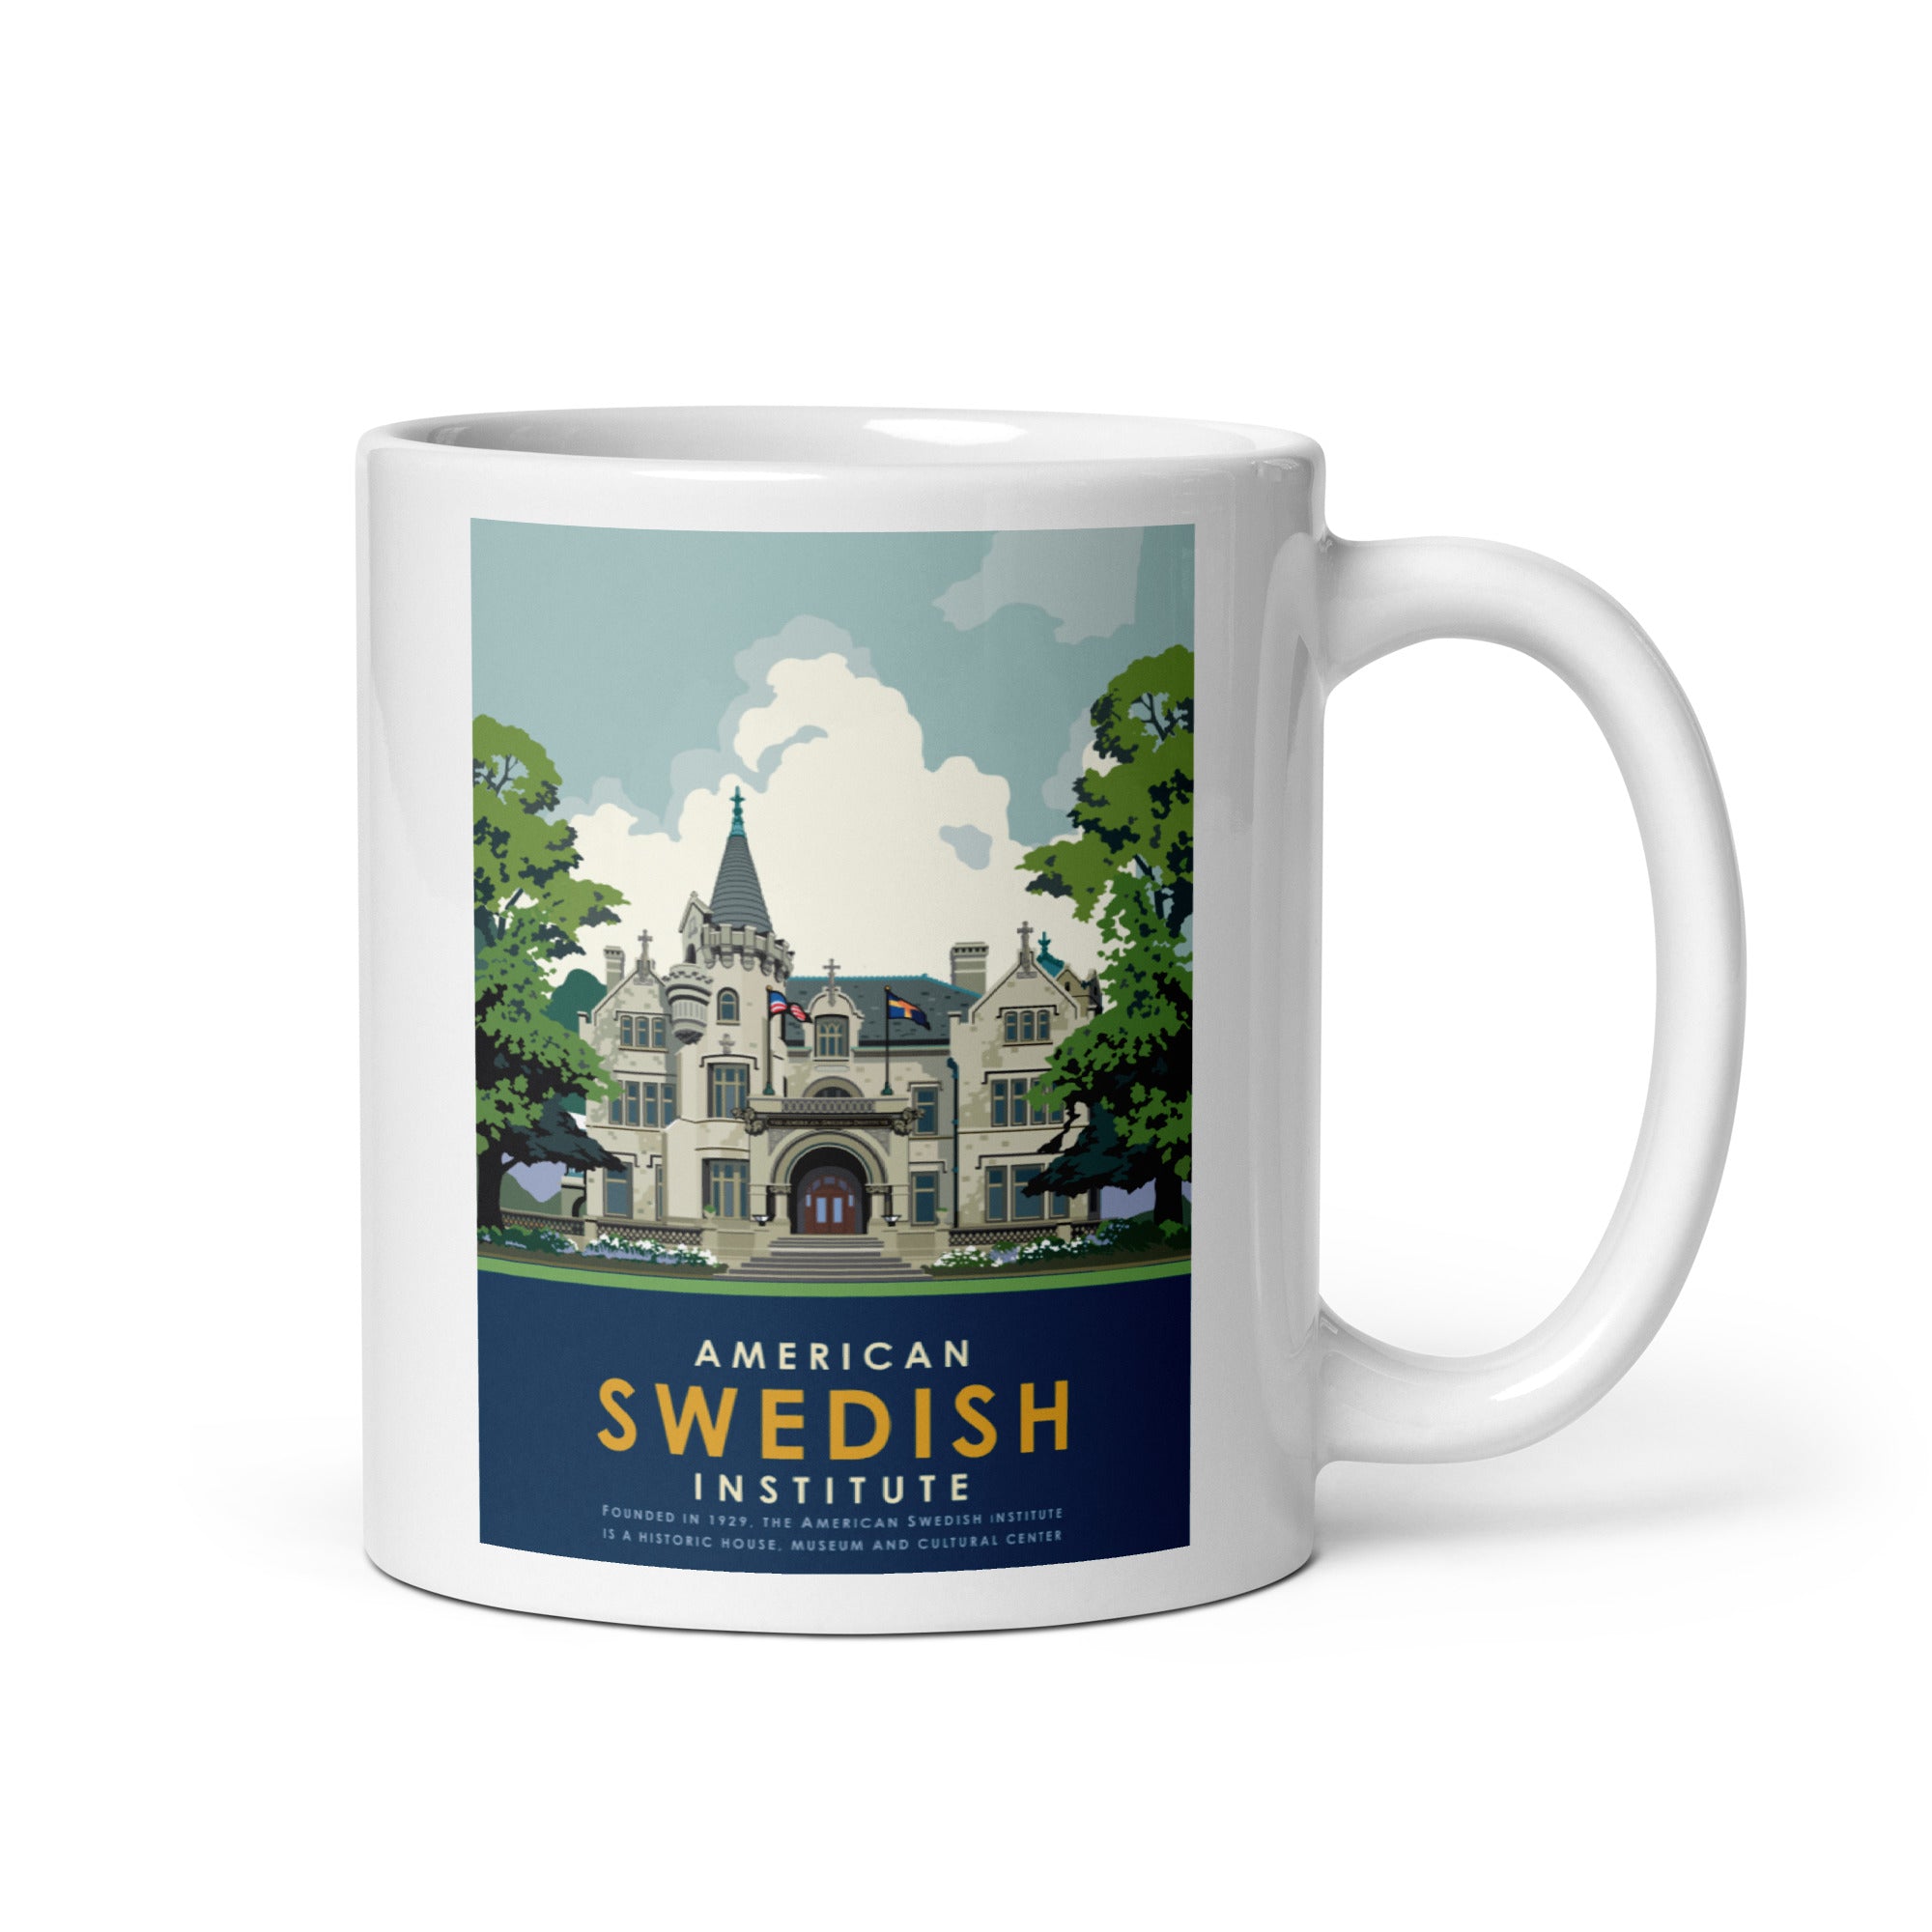 American Swedish Institute White Glossy Mug